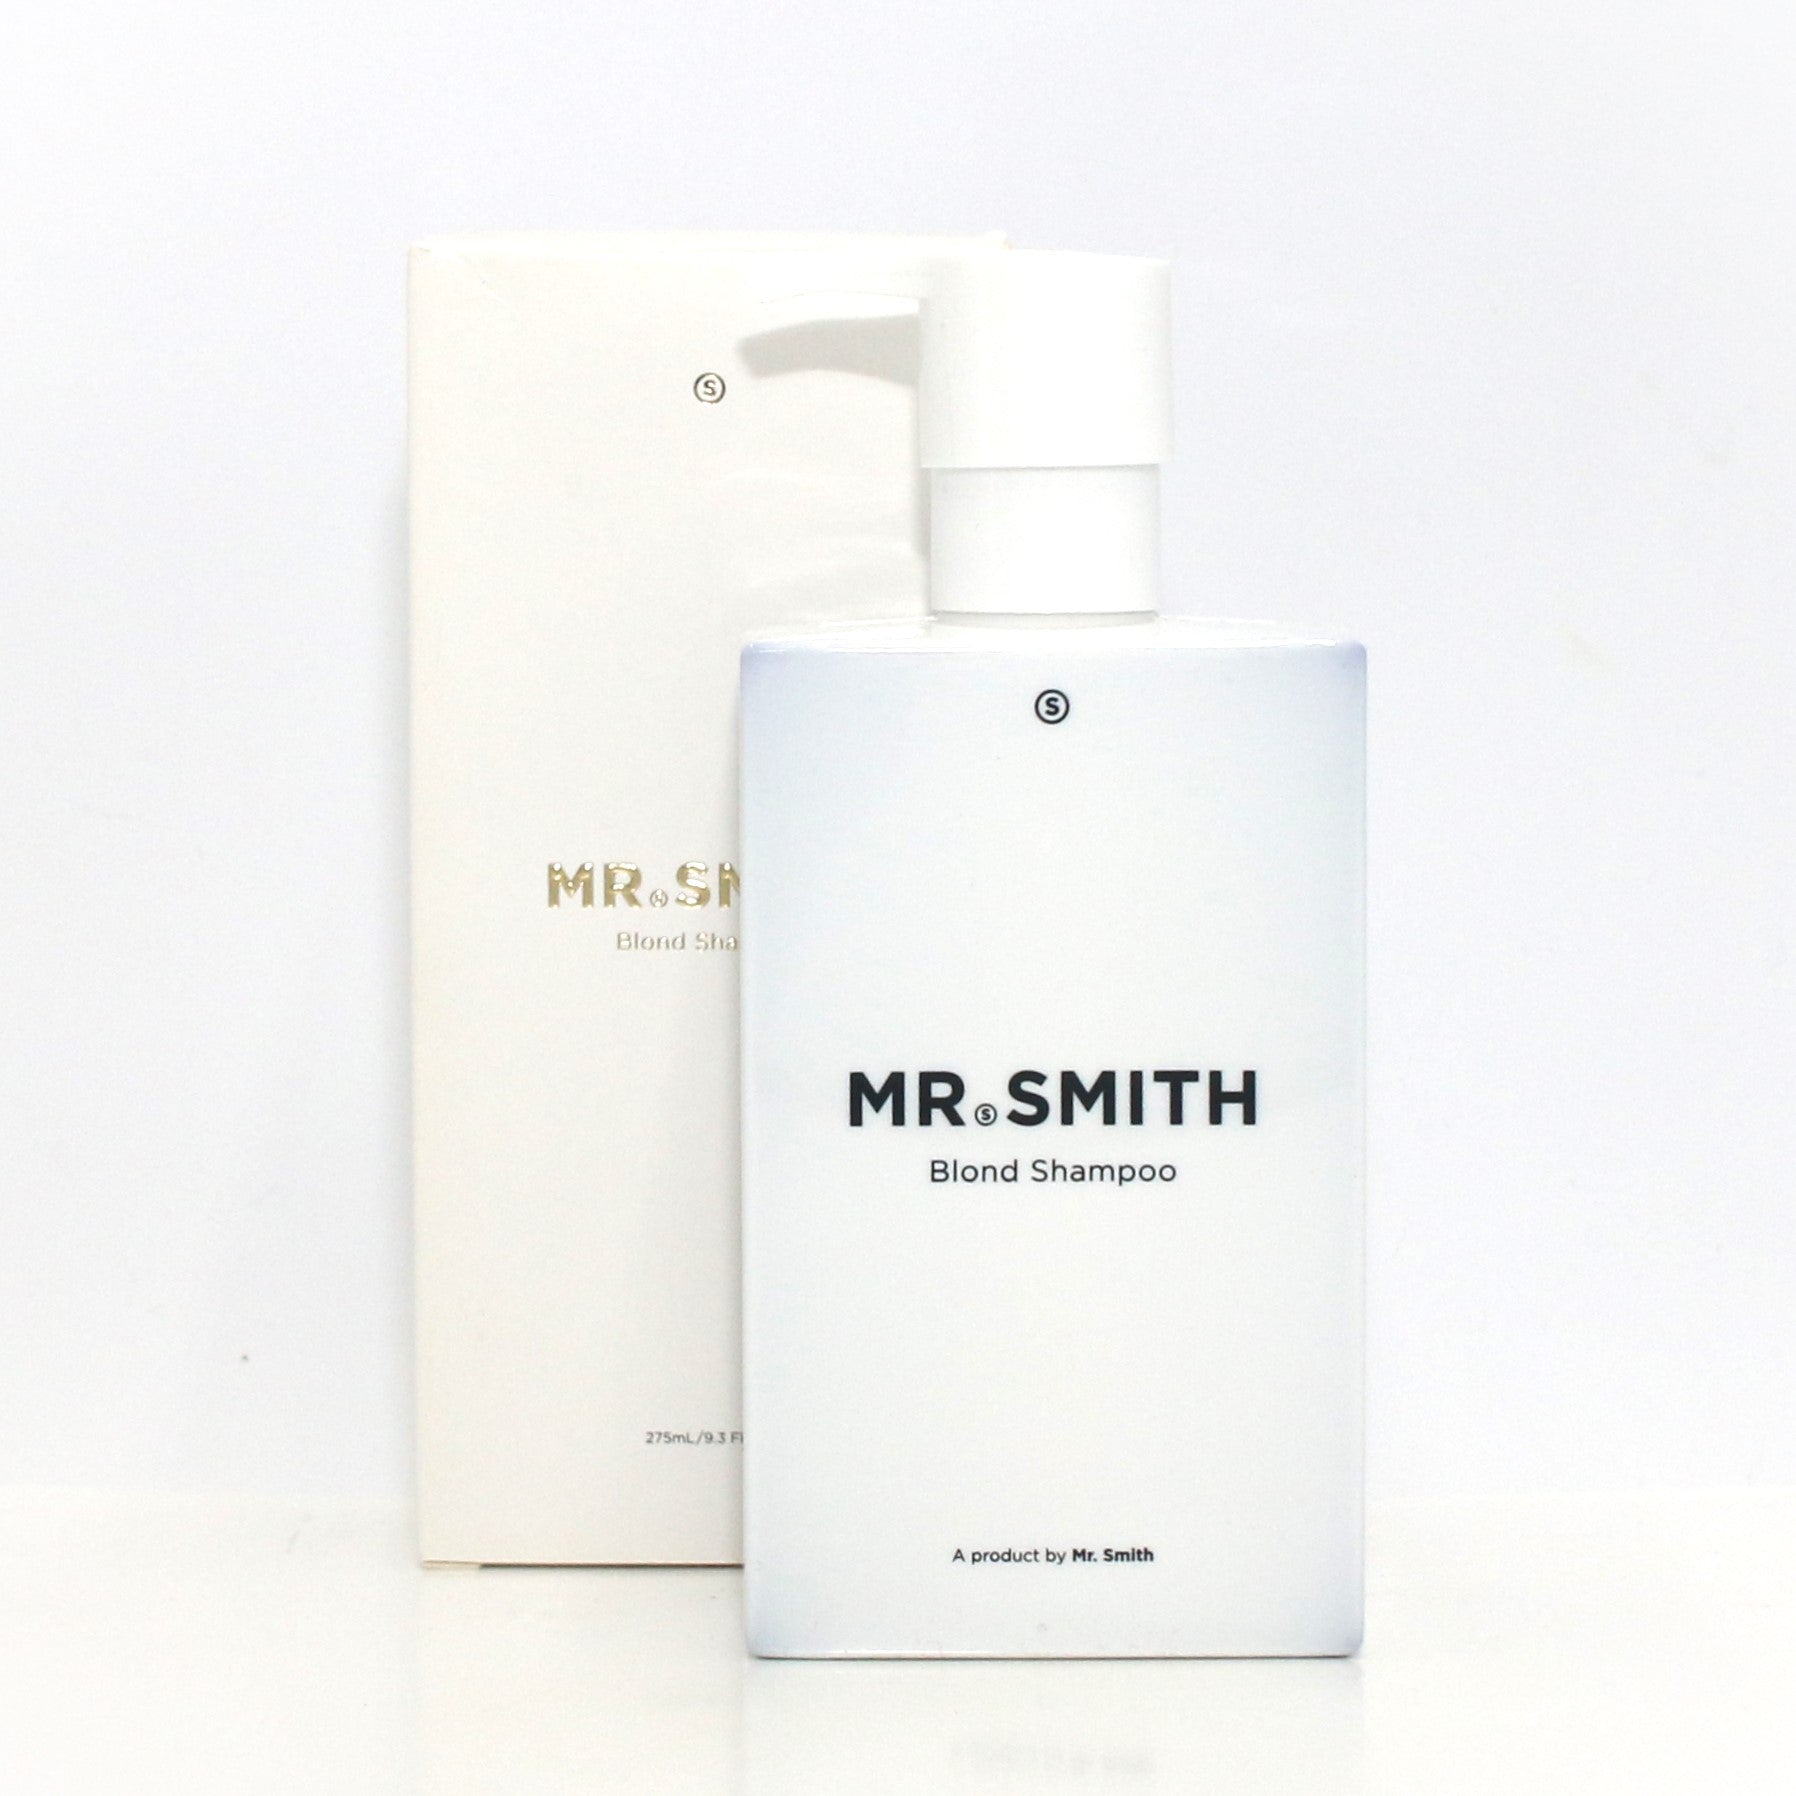 Mr. Smith Blond Shampoo 9.3 oz